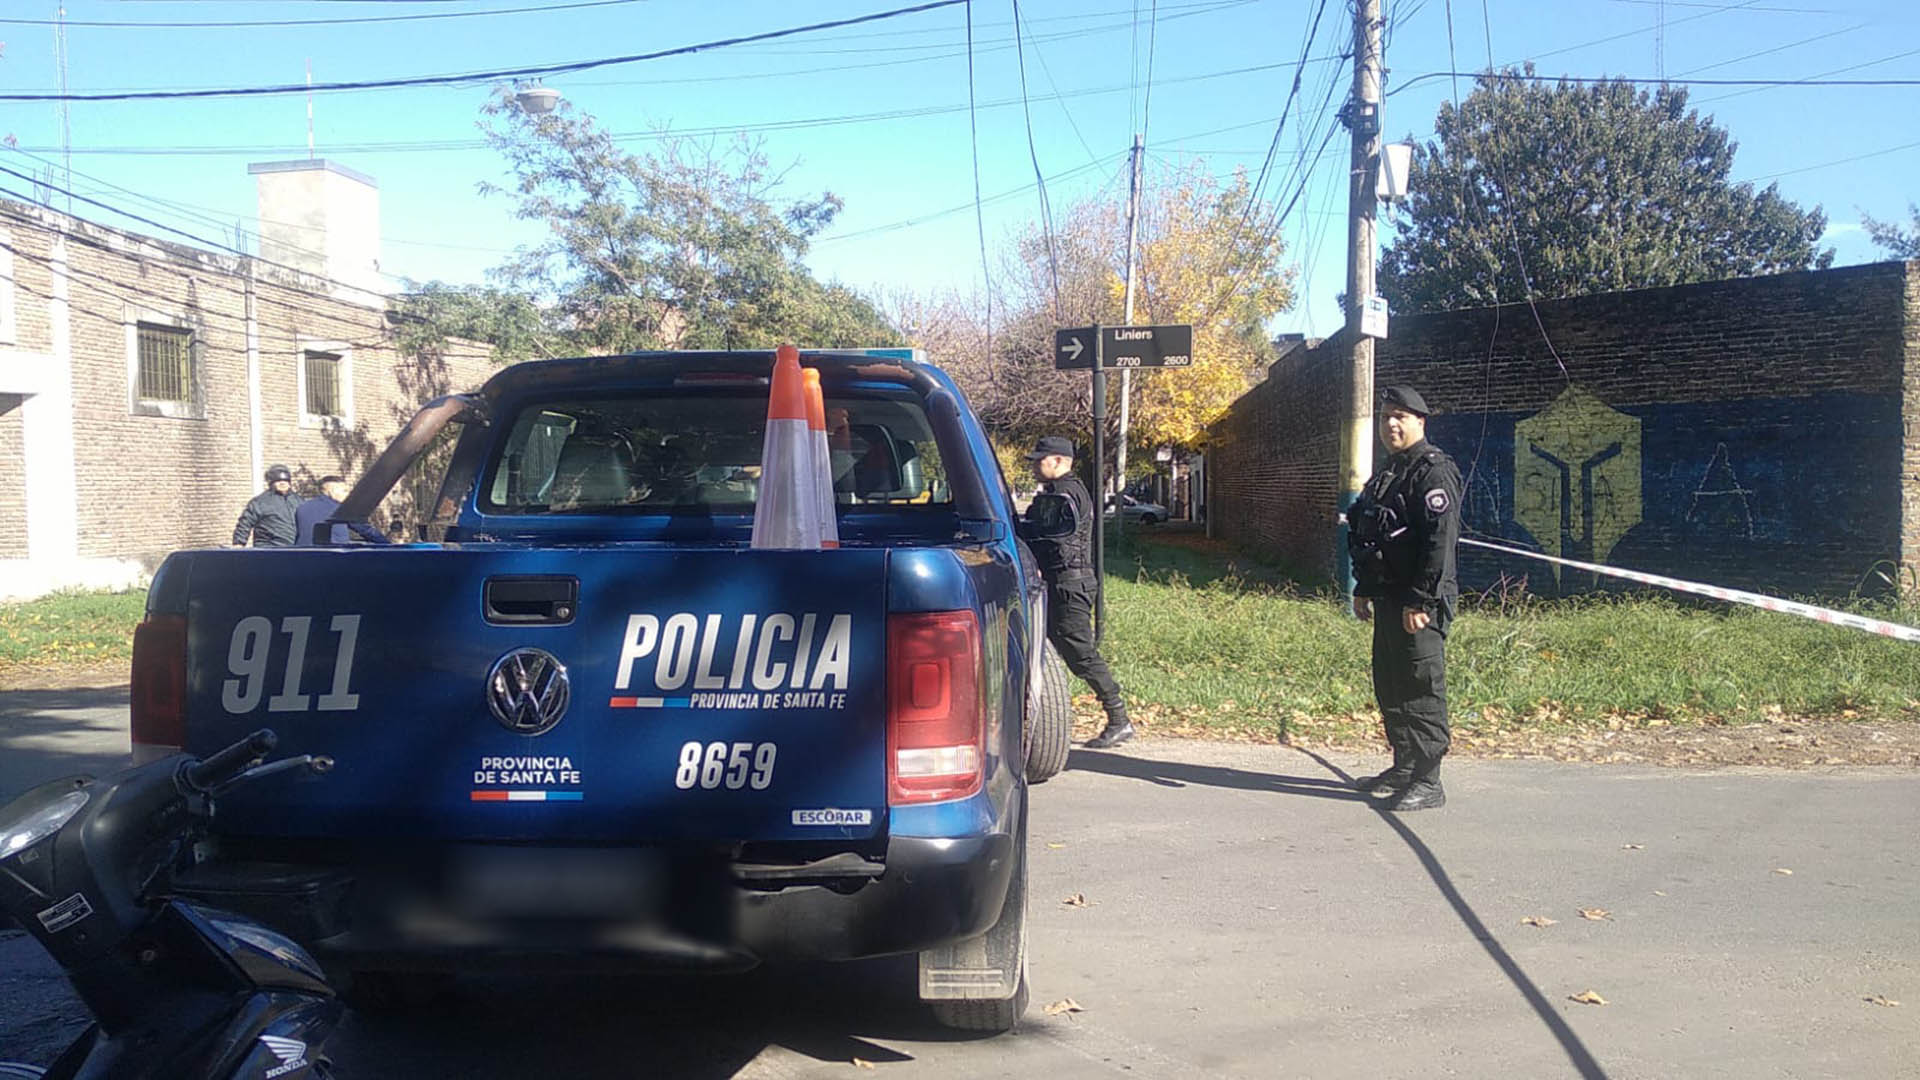 La zona norte de Rosario fue noticia varias veces esta semana en las crónicas policiales. Antes del doble asesinato, hubo tres crímenes más